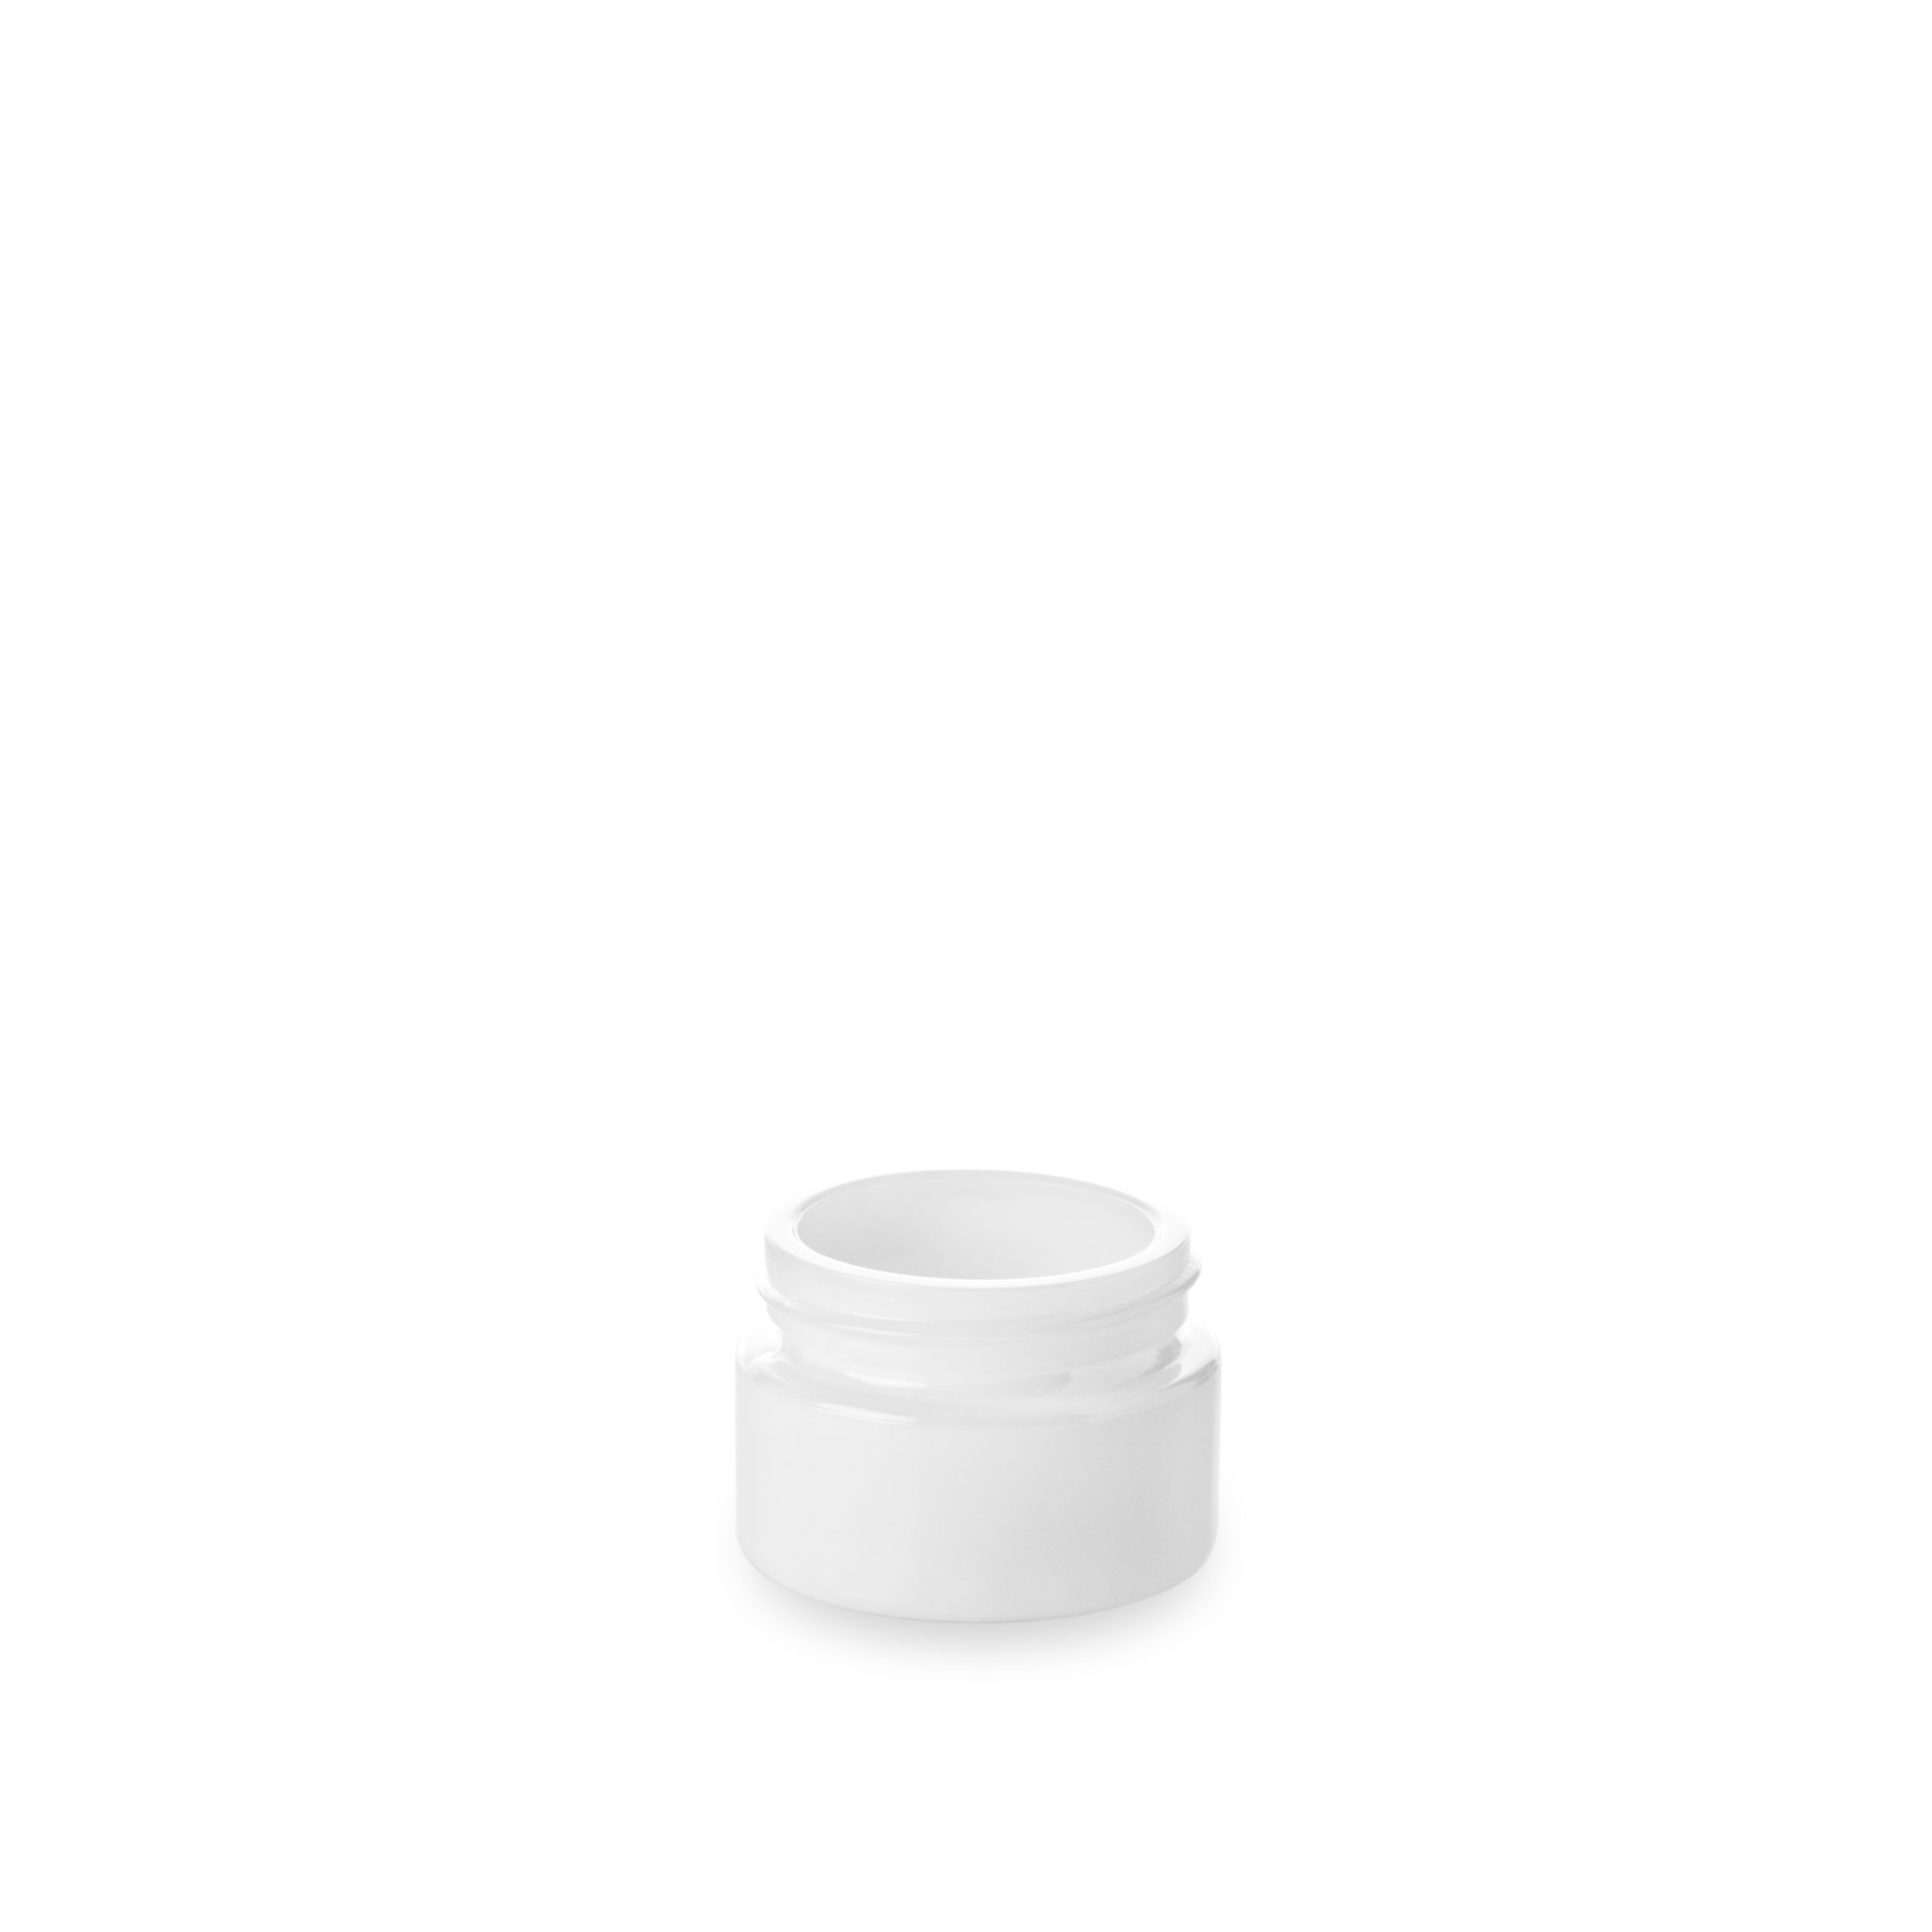 Pot en verre opale en 15 ml GCMI 41/400 d'Embalforme pour une petite contenance.